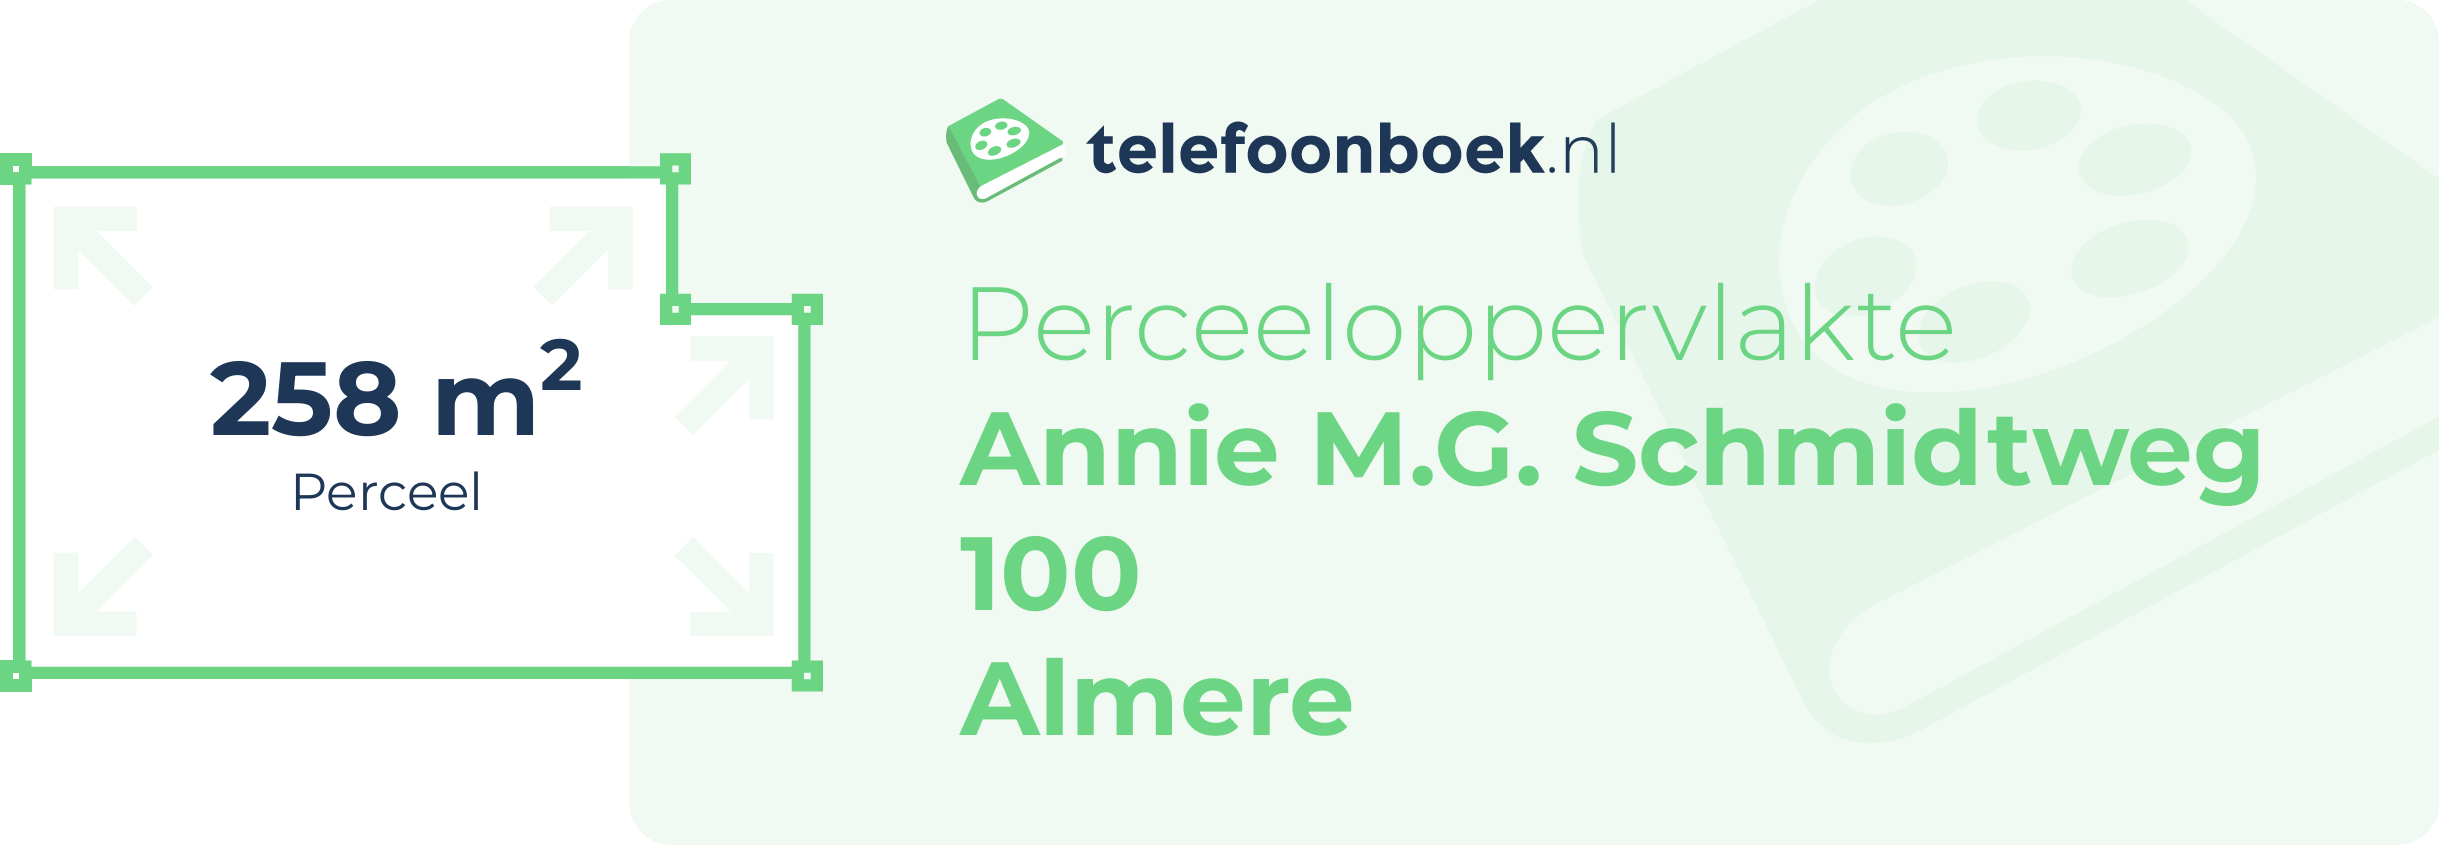 Perceeloppervlakte Annie M.G. Schmidtweg 100 Almere